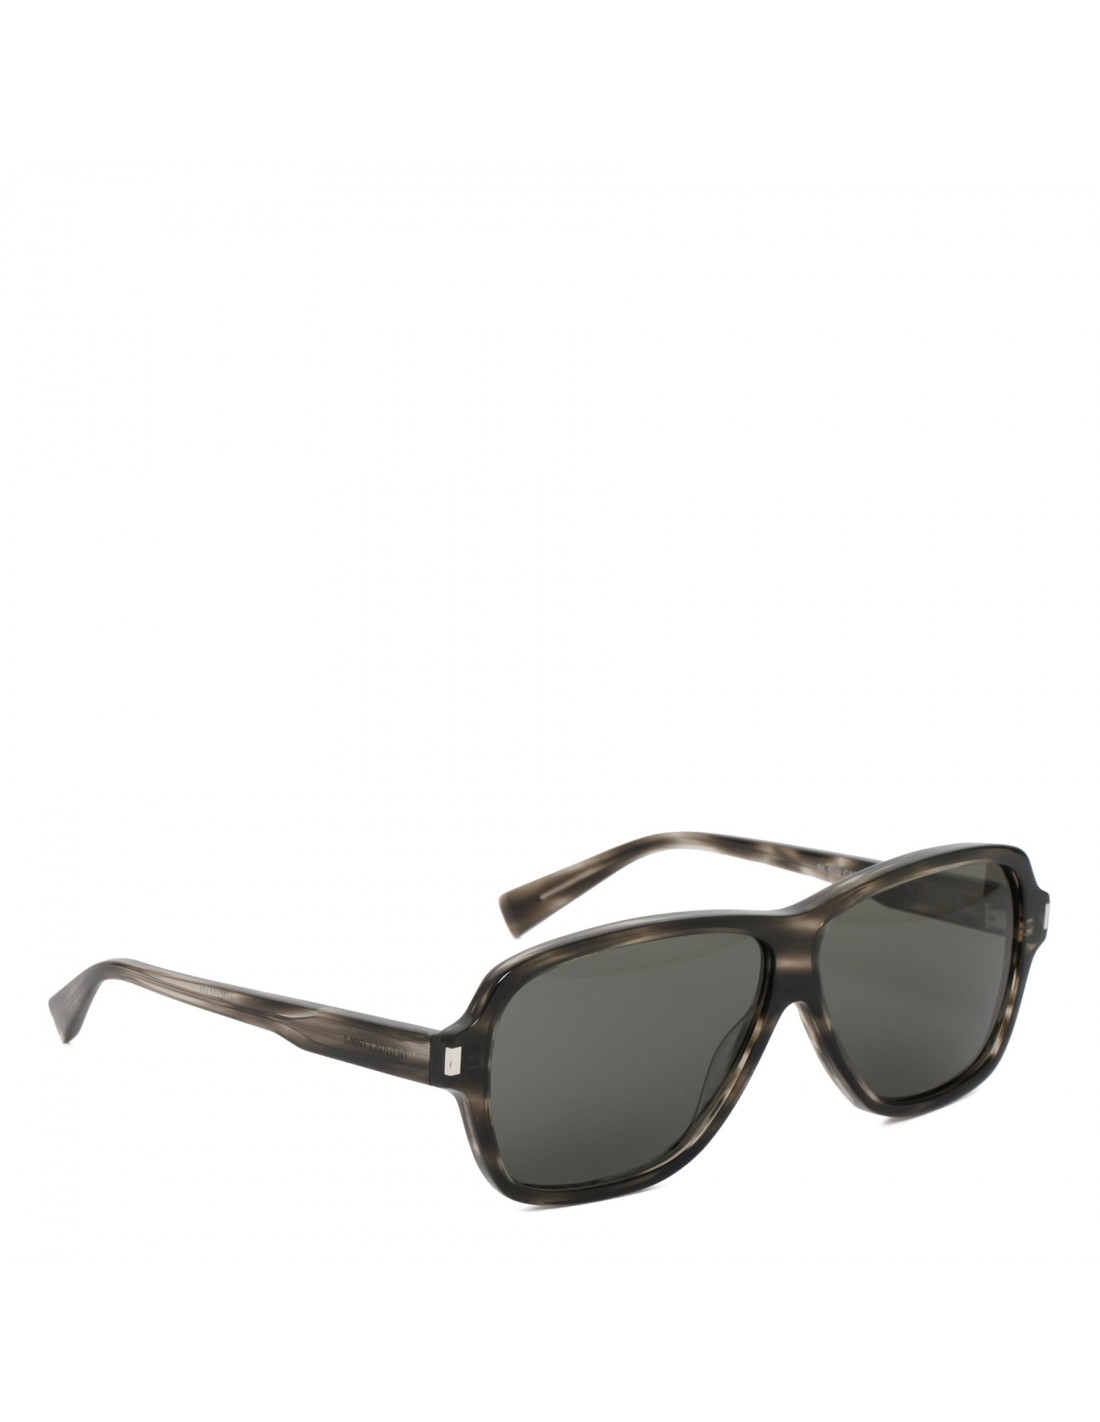 SL 609 aviator sunglasses